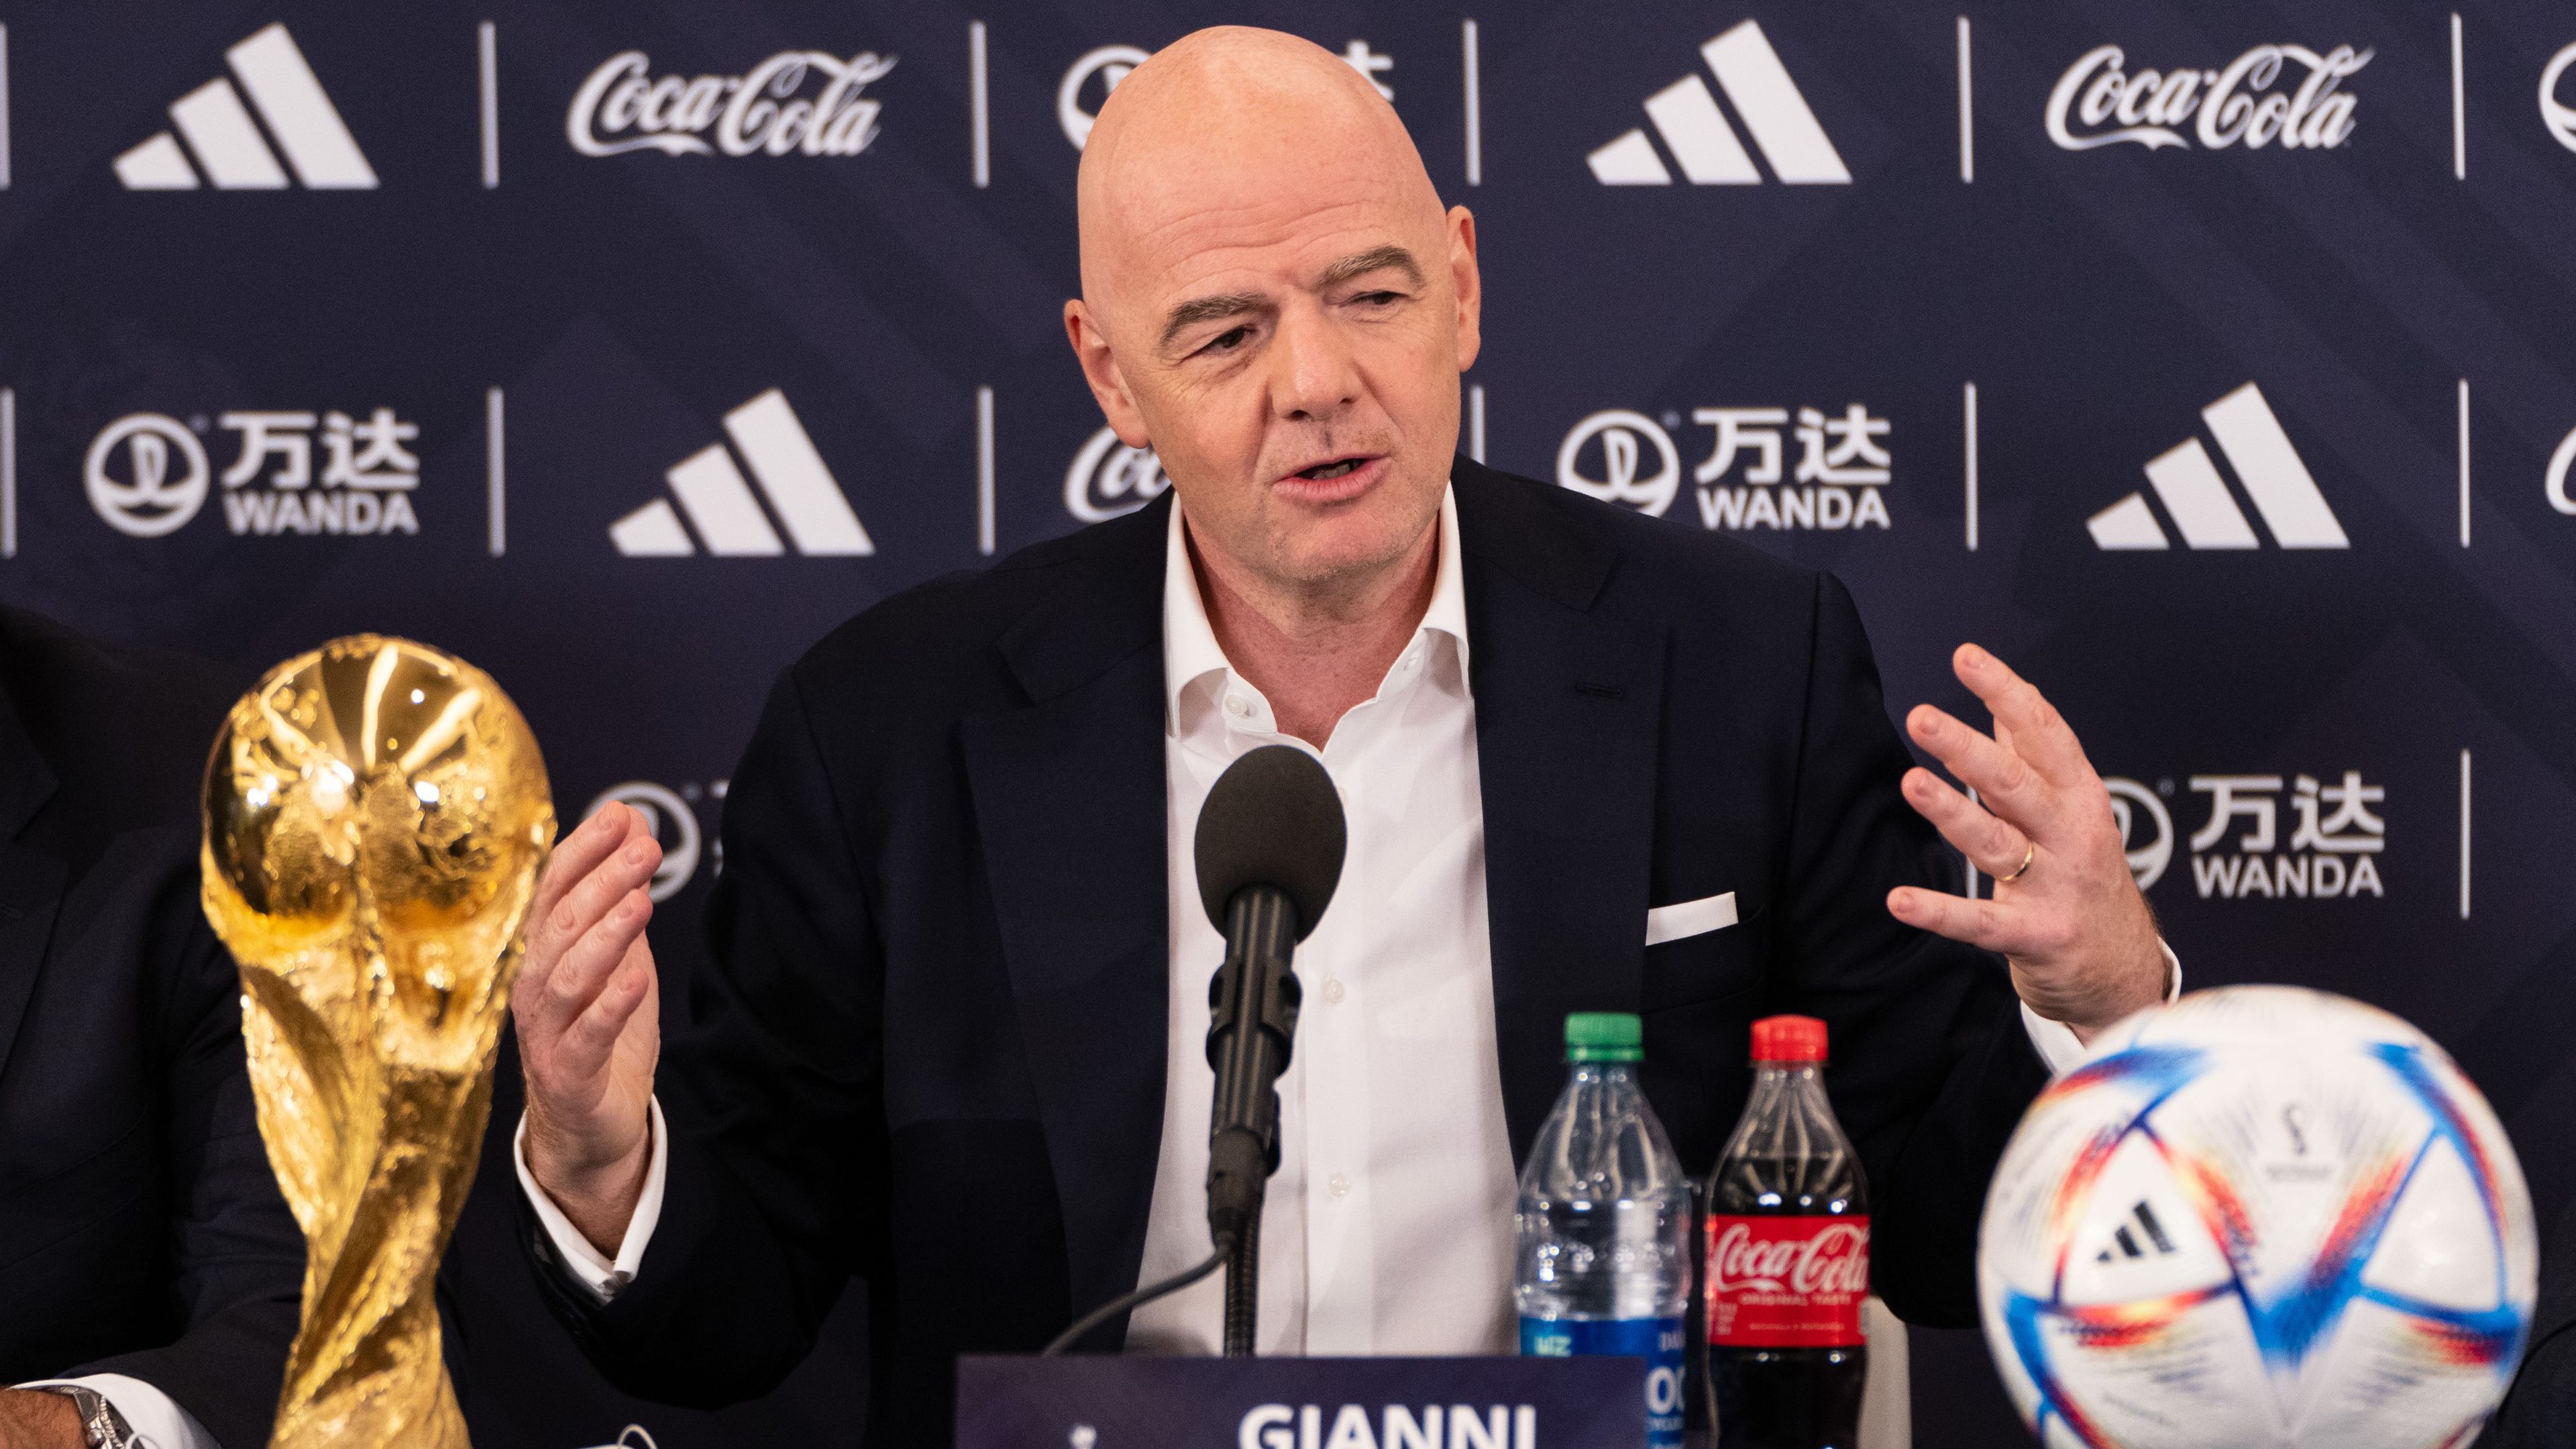 Úgy tűnik, hogy a FIFA változtat az előzetes elképzelésein és a 2026-os világbajnokságon is maradnak a négy csapatos csoportok – a szervezet elnöke, Gianni Infantino ezt március közepén hivatalos is bejelentheti.